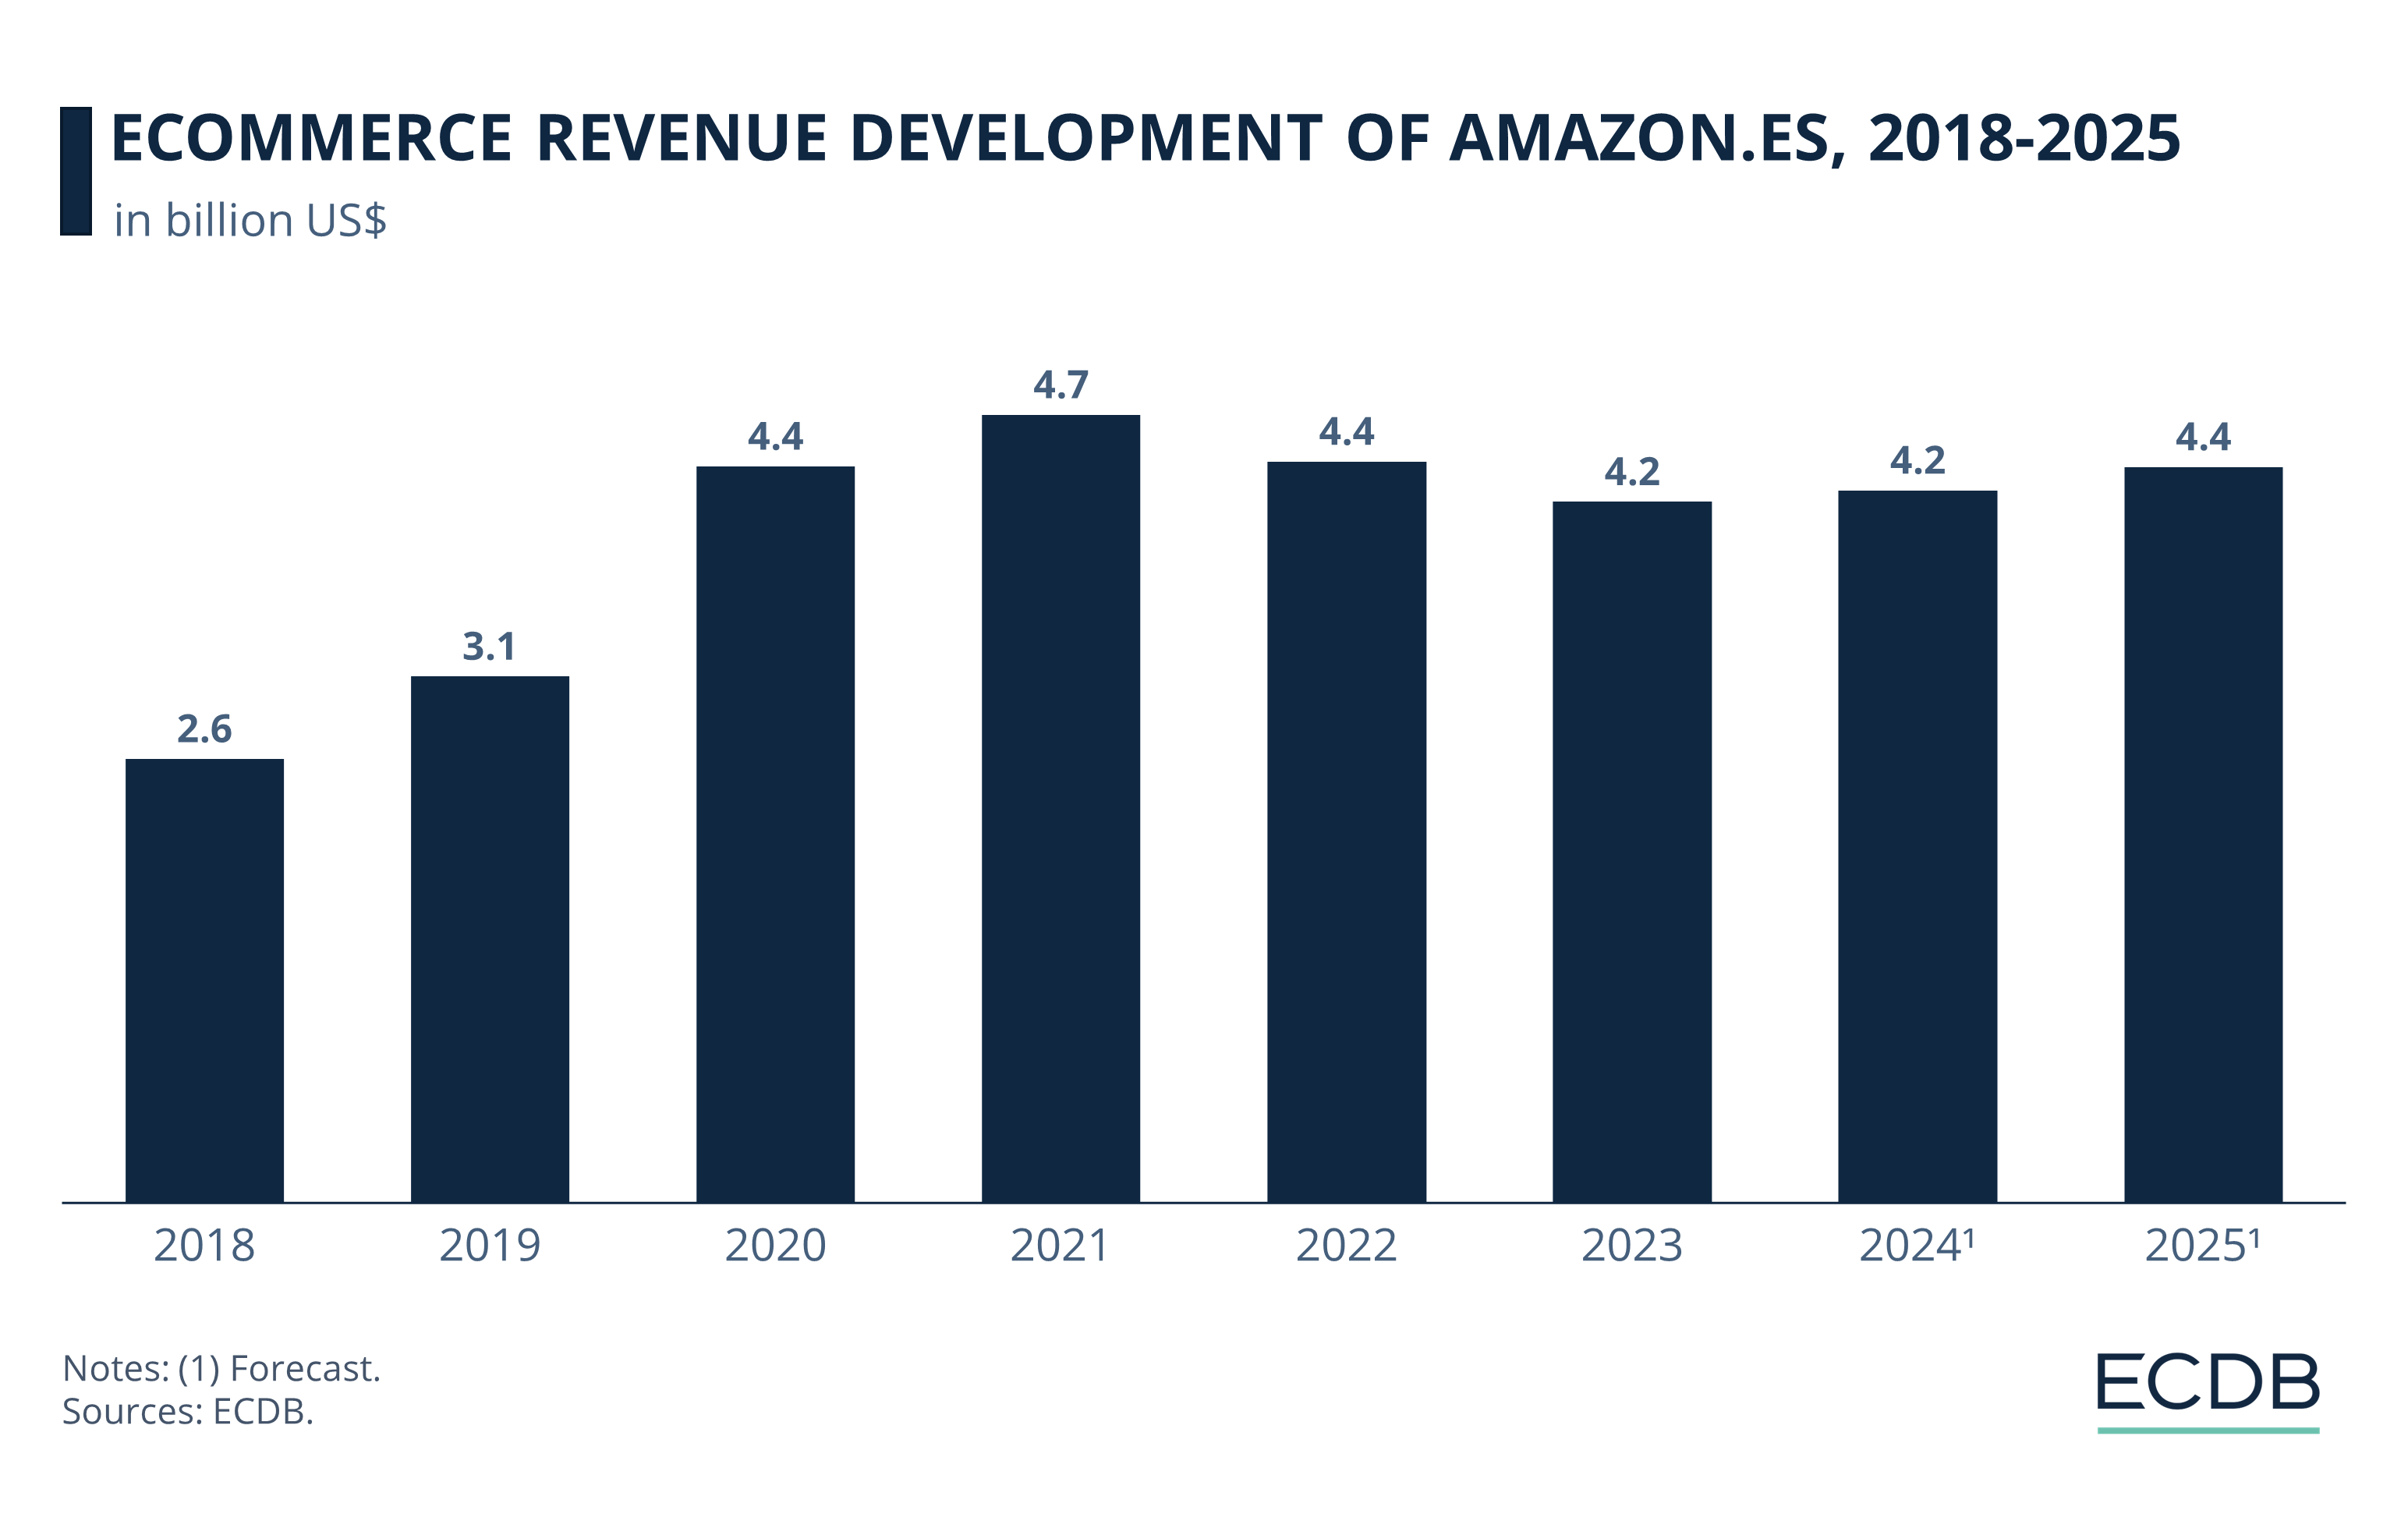 eCommerce Revenue Development of Amazon.es, 2018-2025